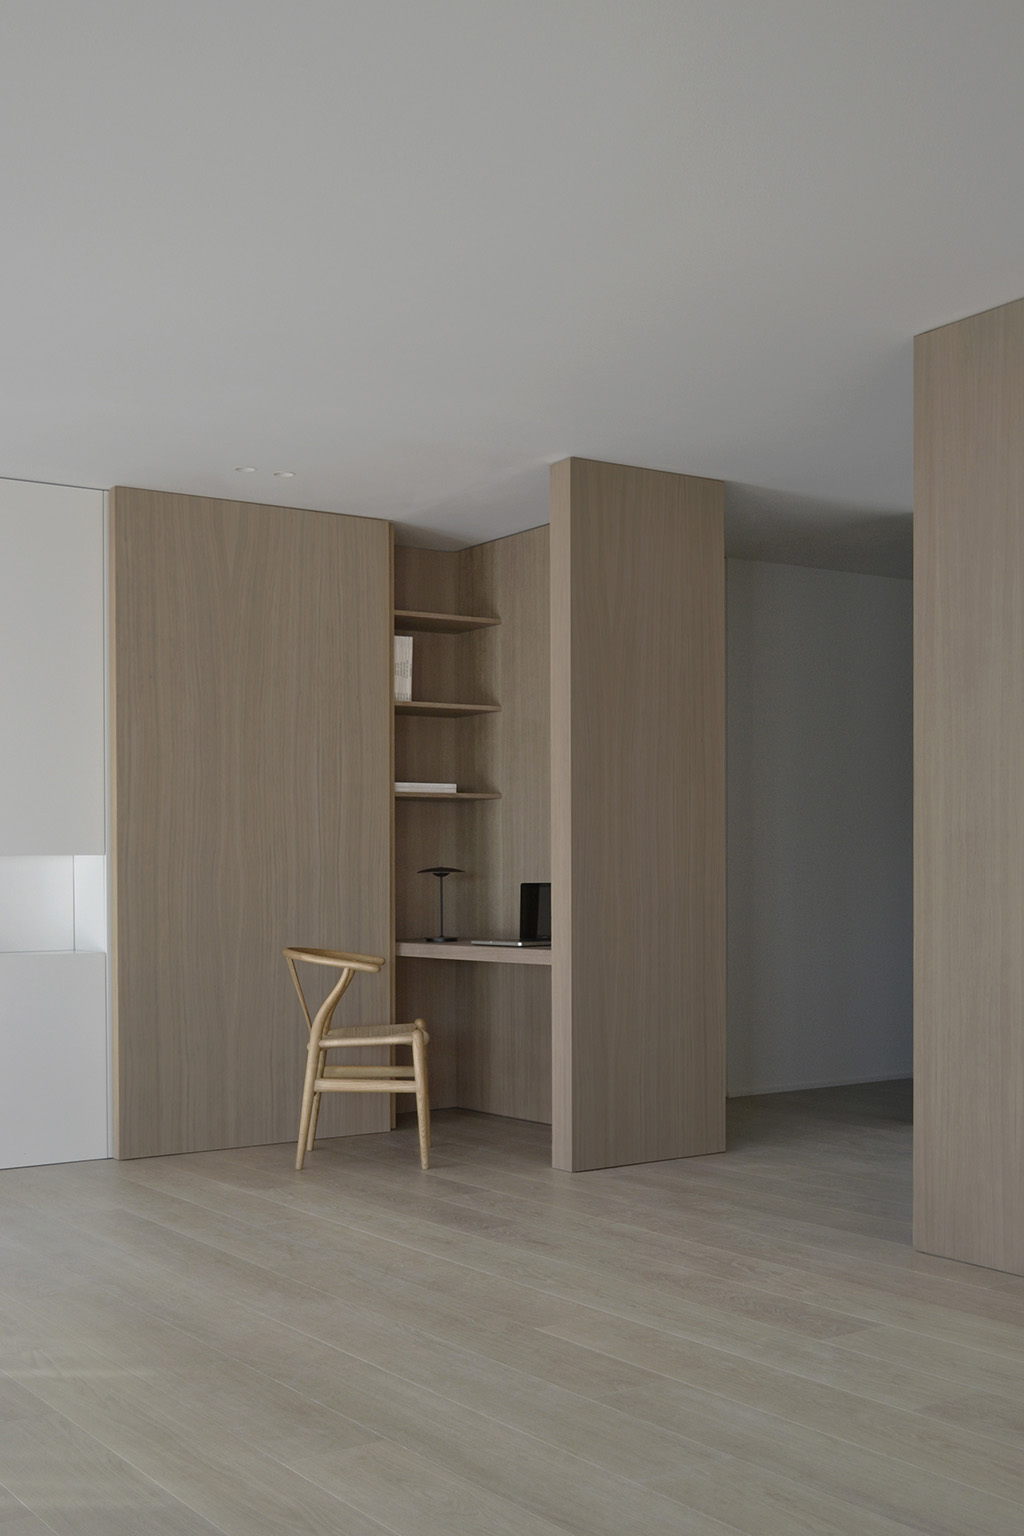 極簡公寓設計案例,公寓設計,極簡主義,國外極簡風格公寓設計,Deza Setien,馬德裏,原木色+白色,公寓設計方案,120㎡